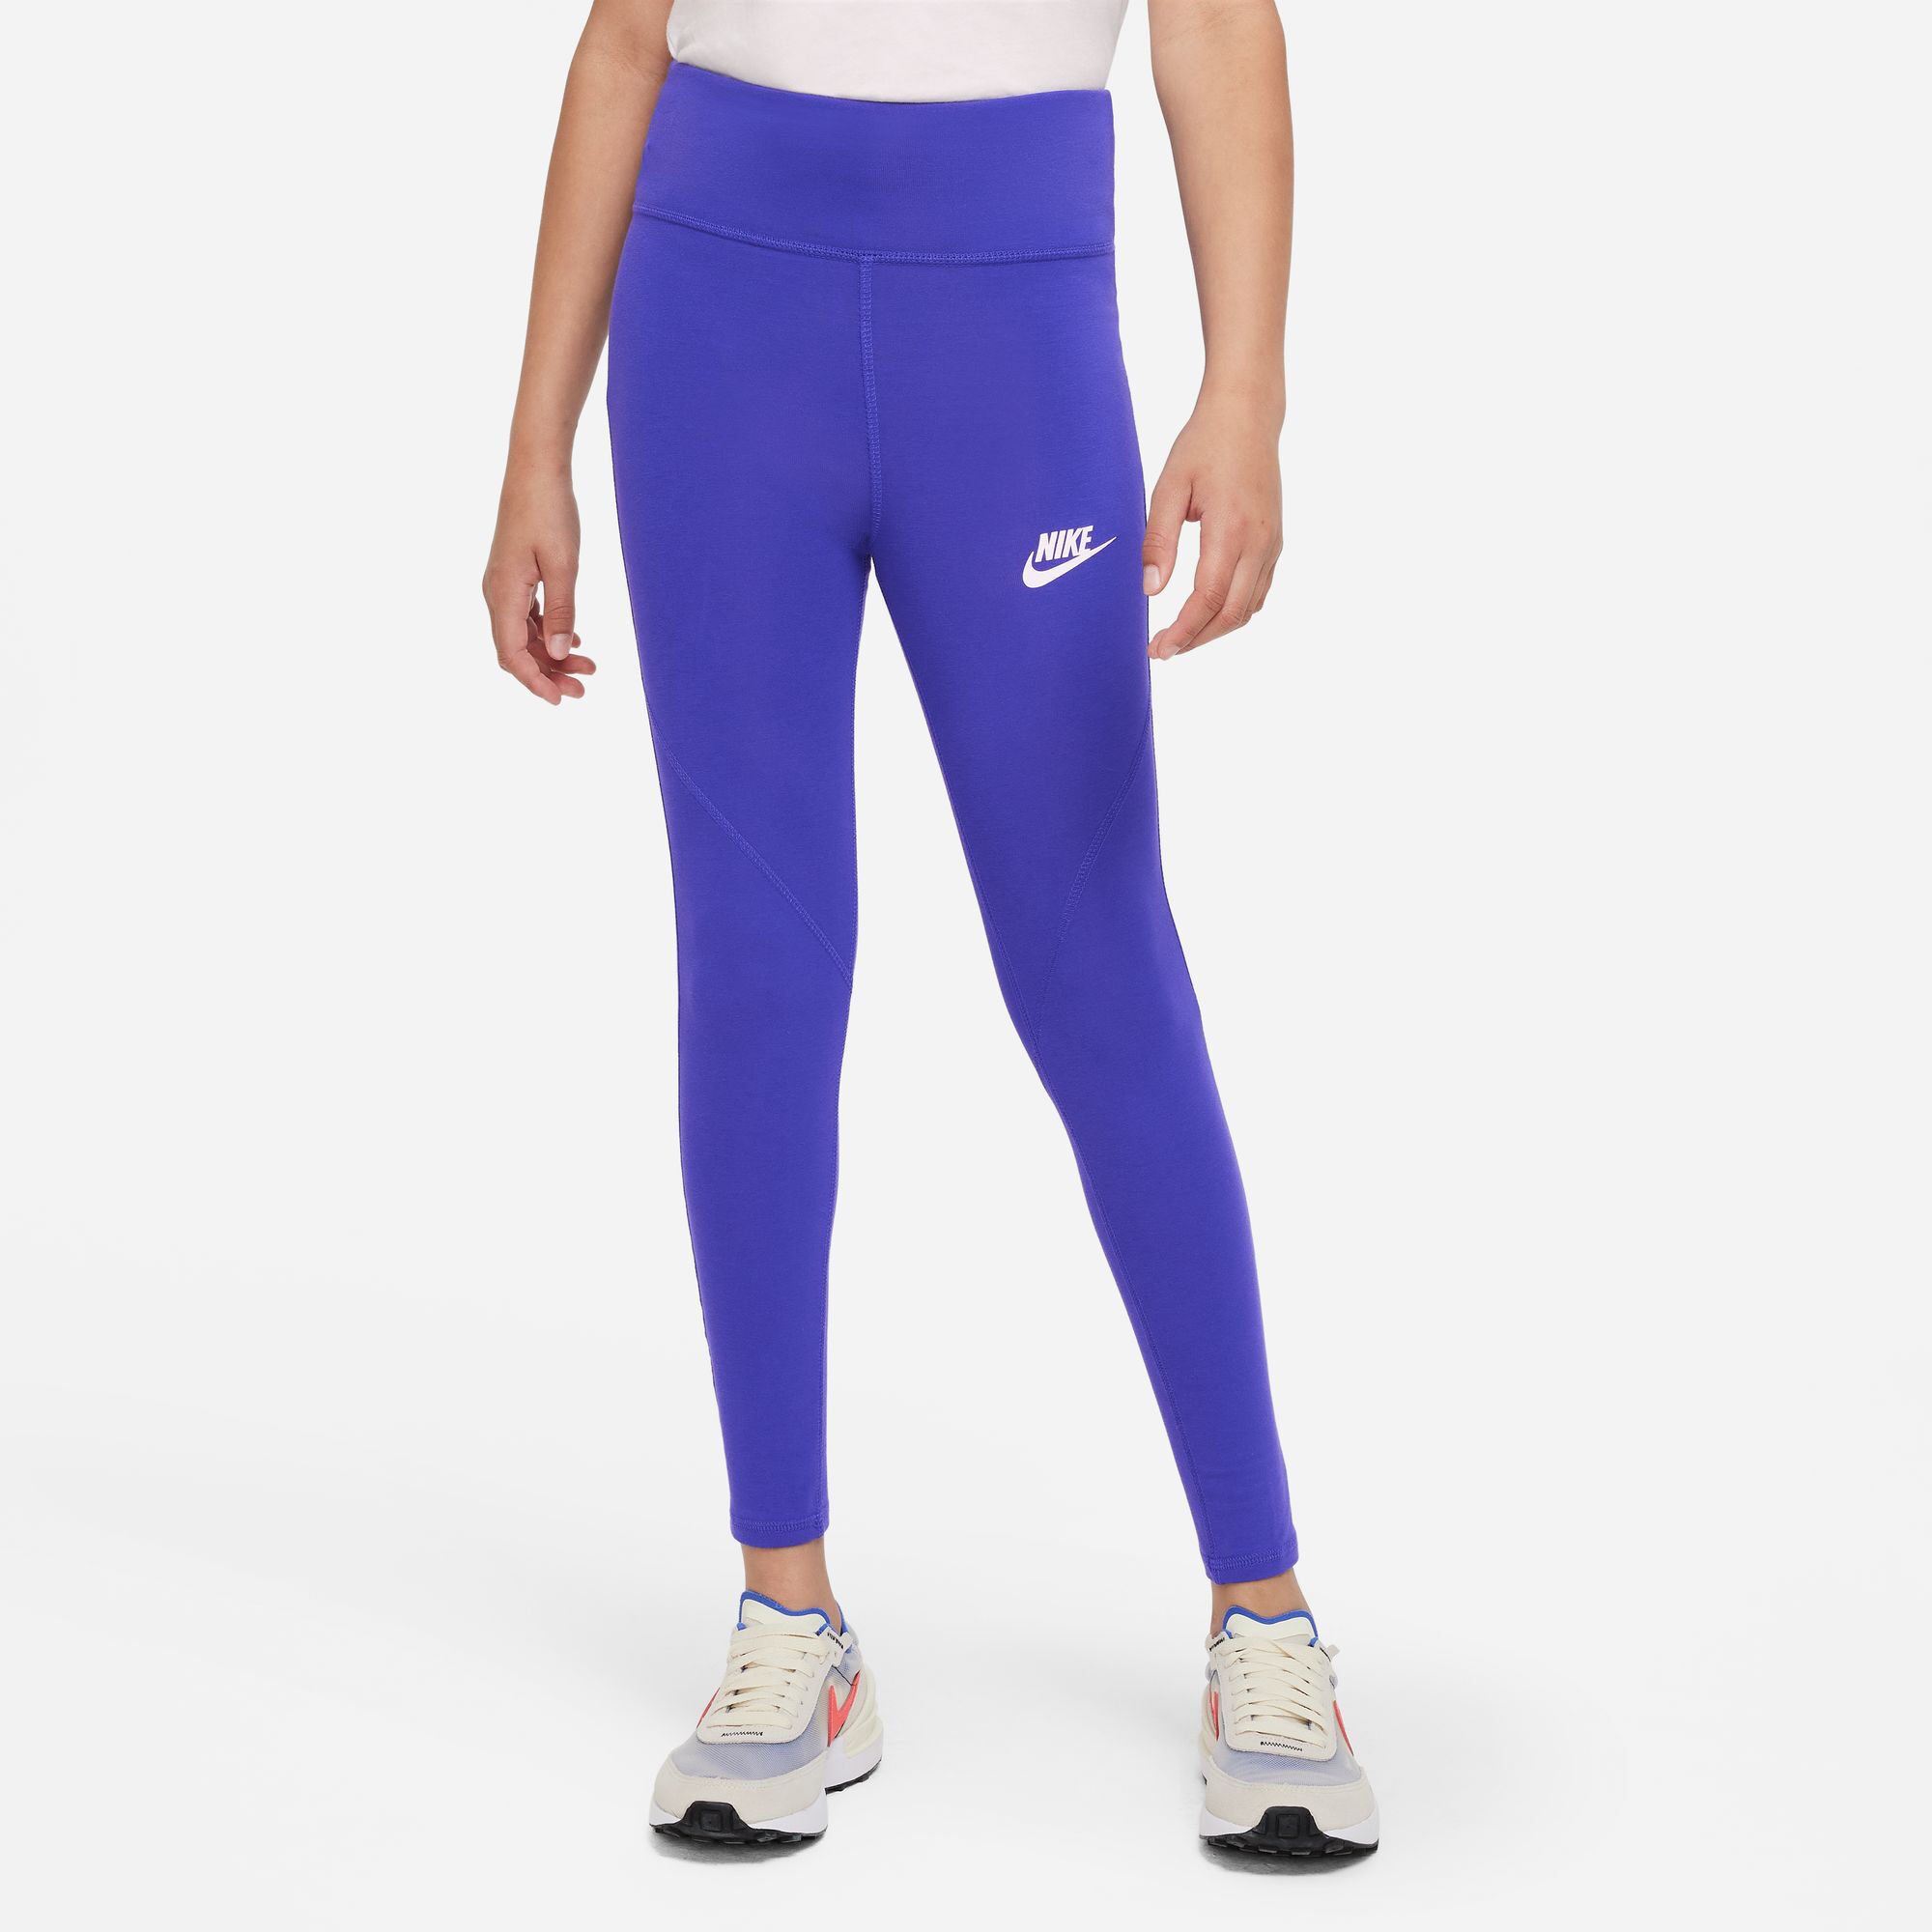 Buy Nike Sportswear Tight Girls Blue online